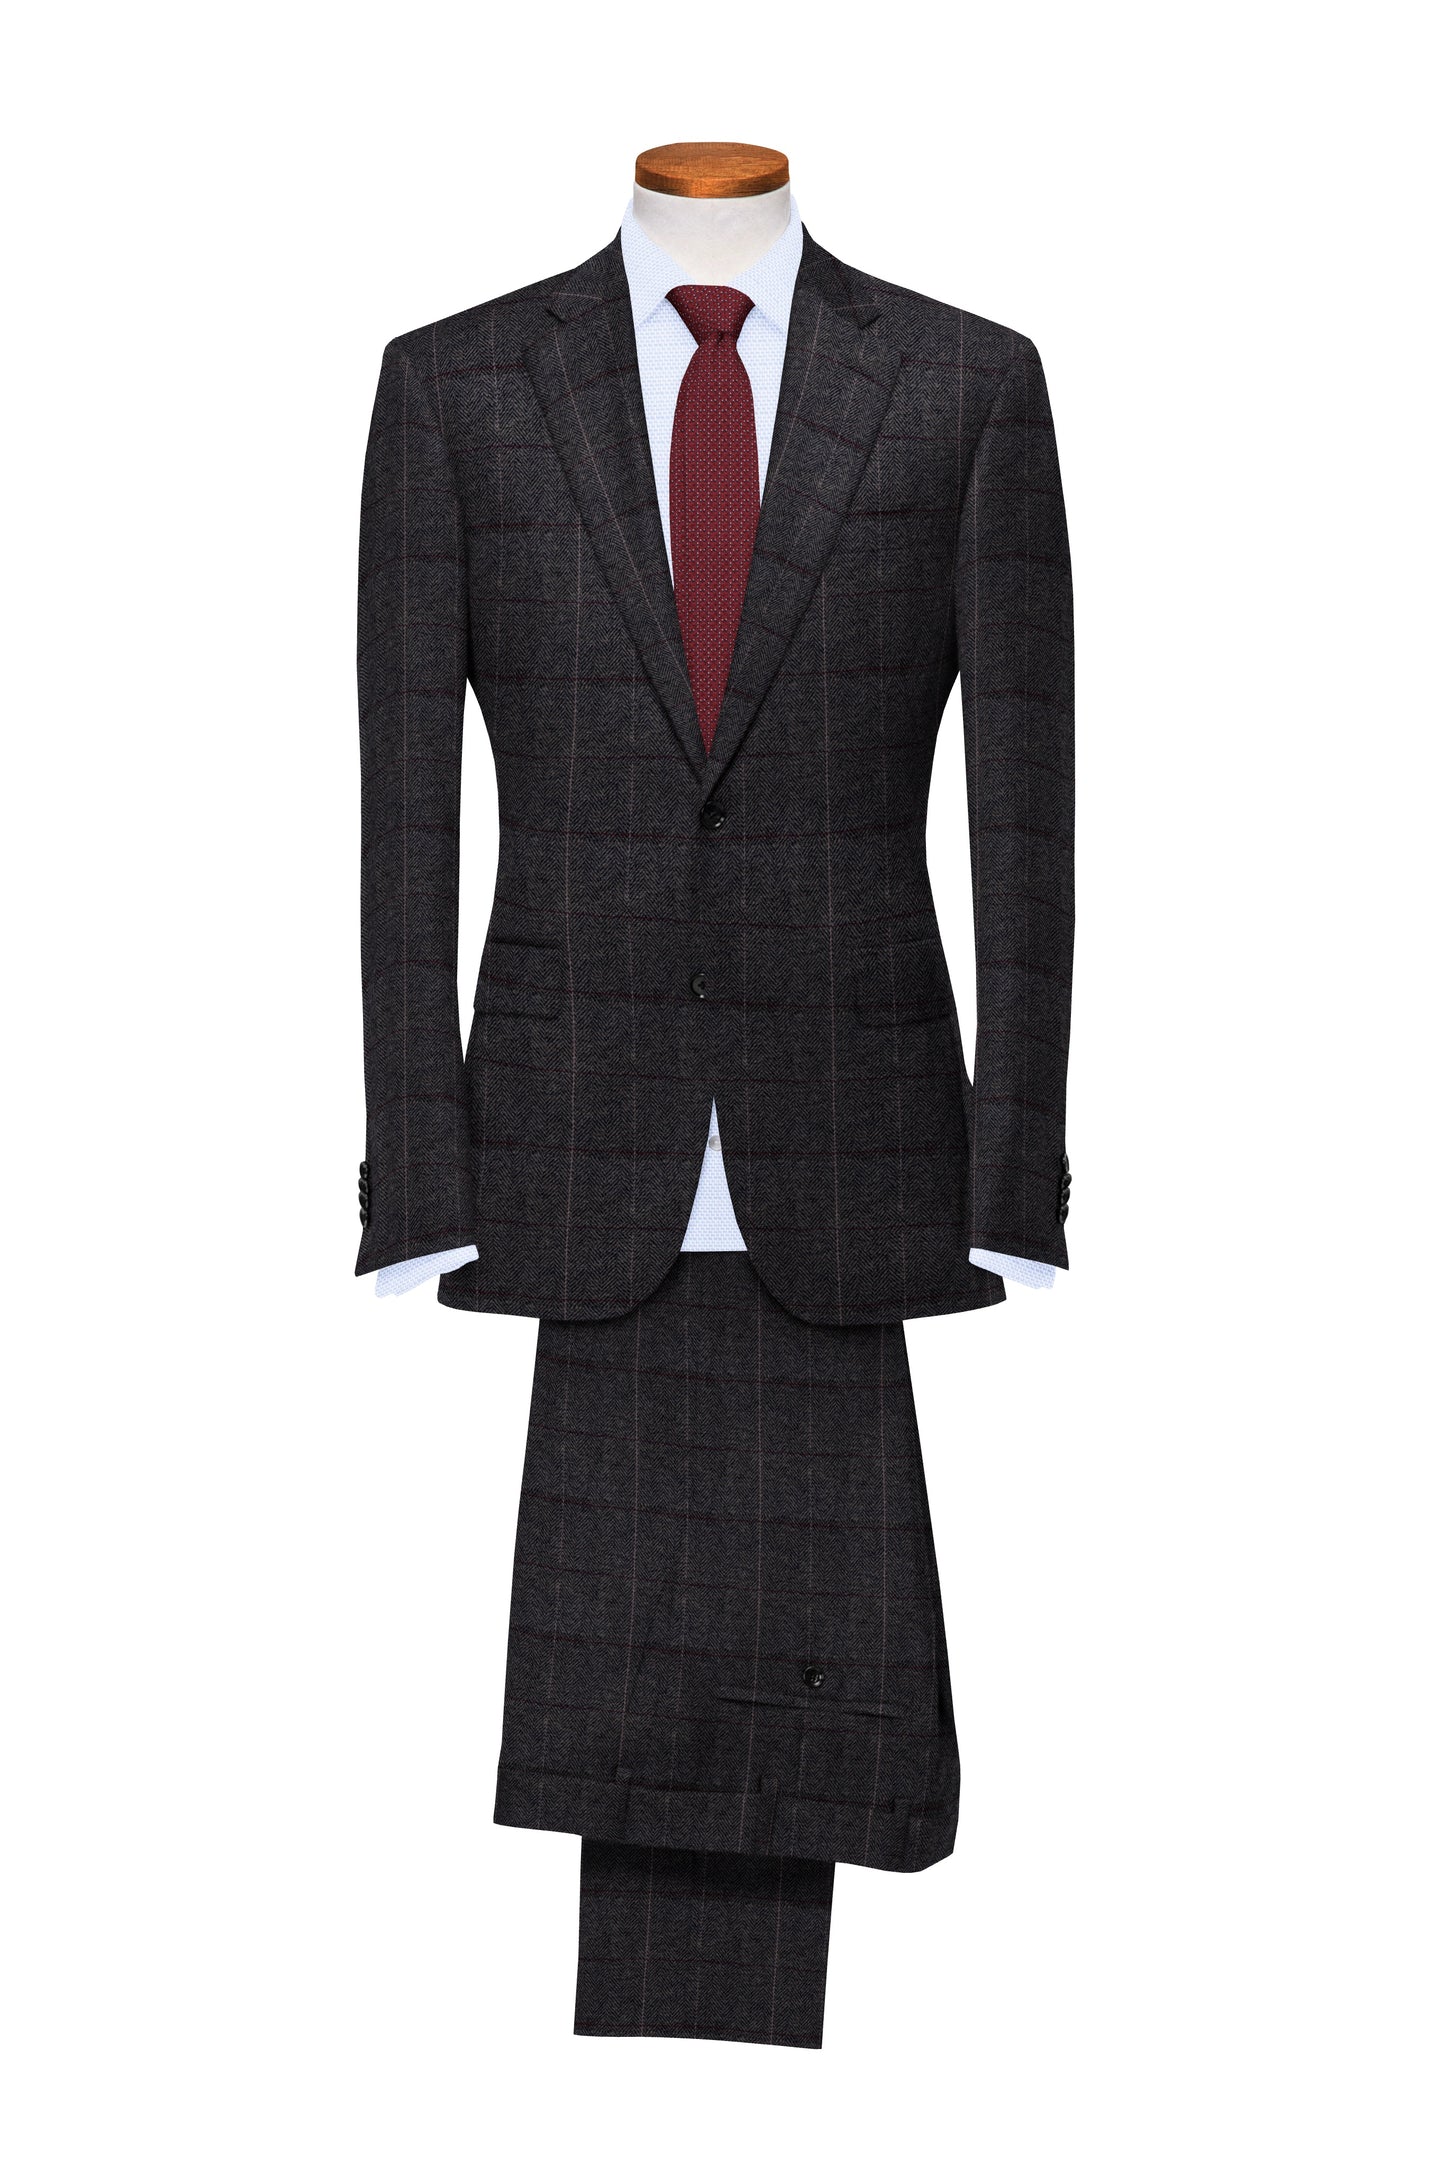 Sundown Grey Herringbone Plaid Tweed Suit